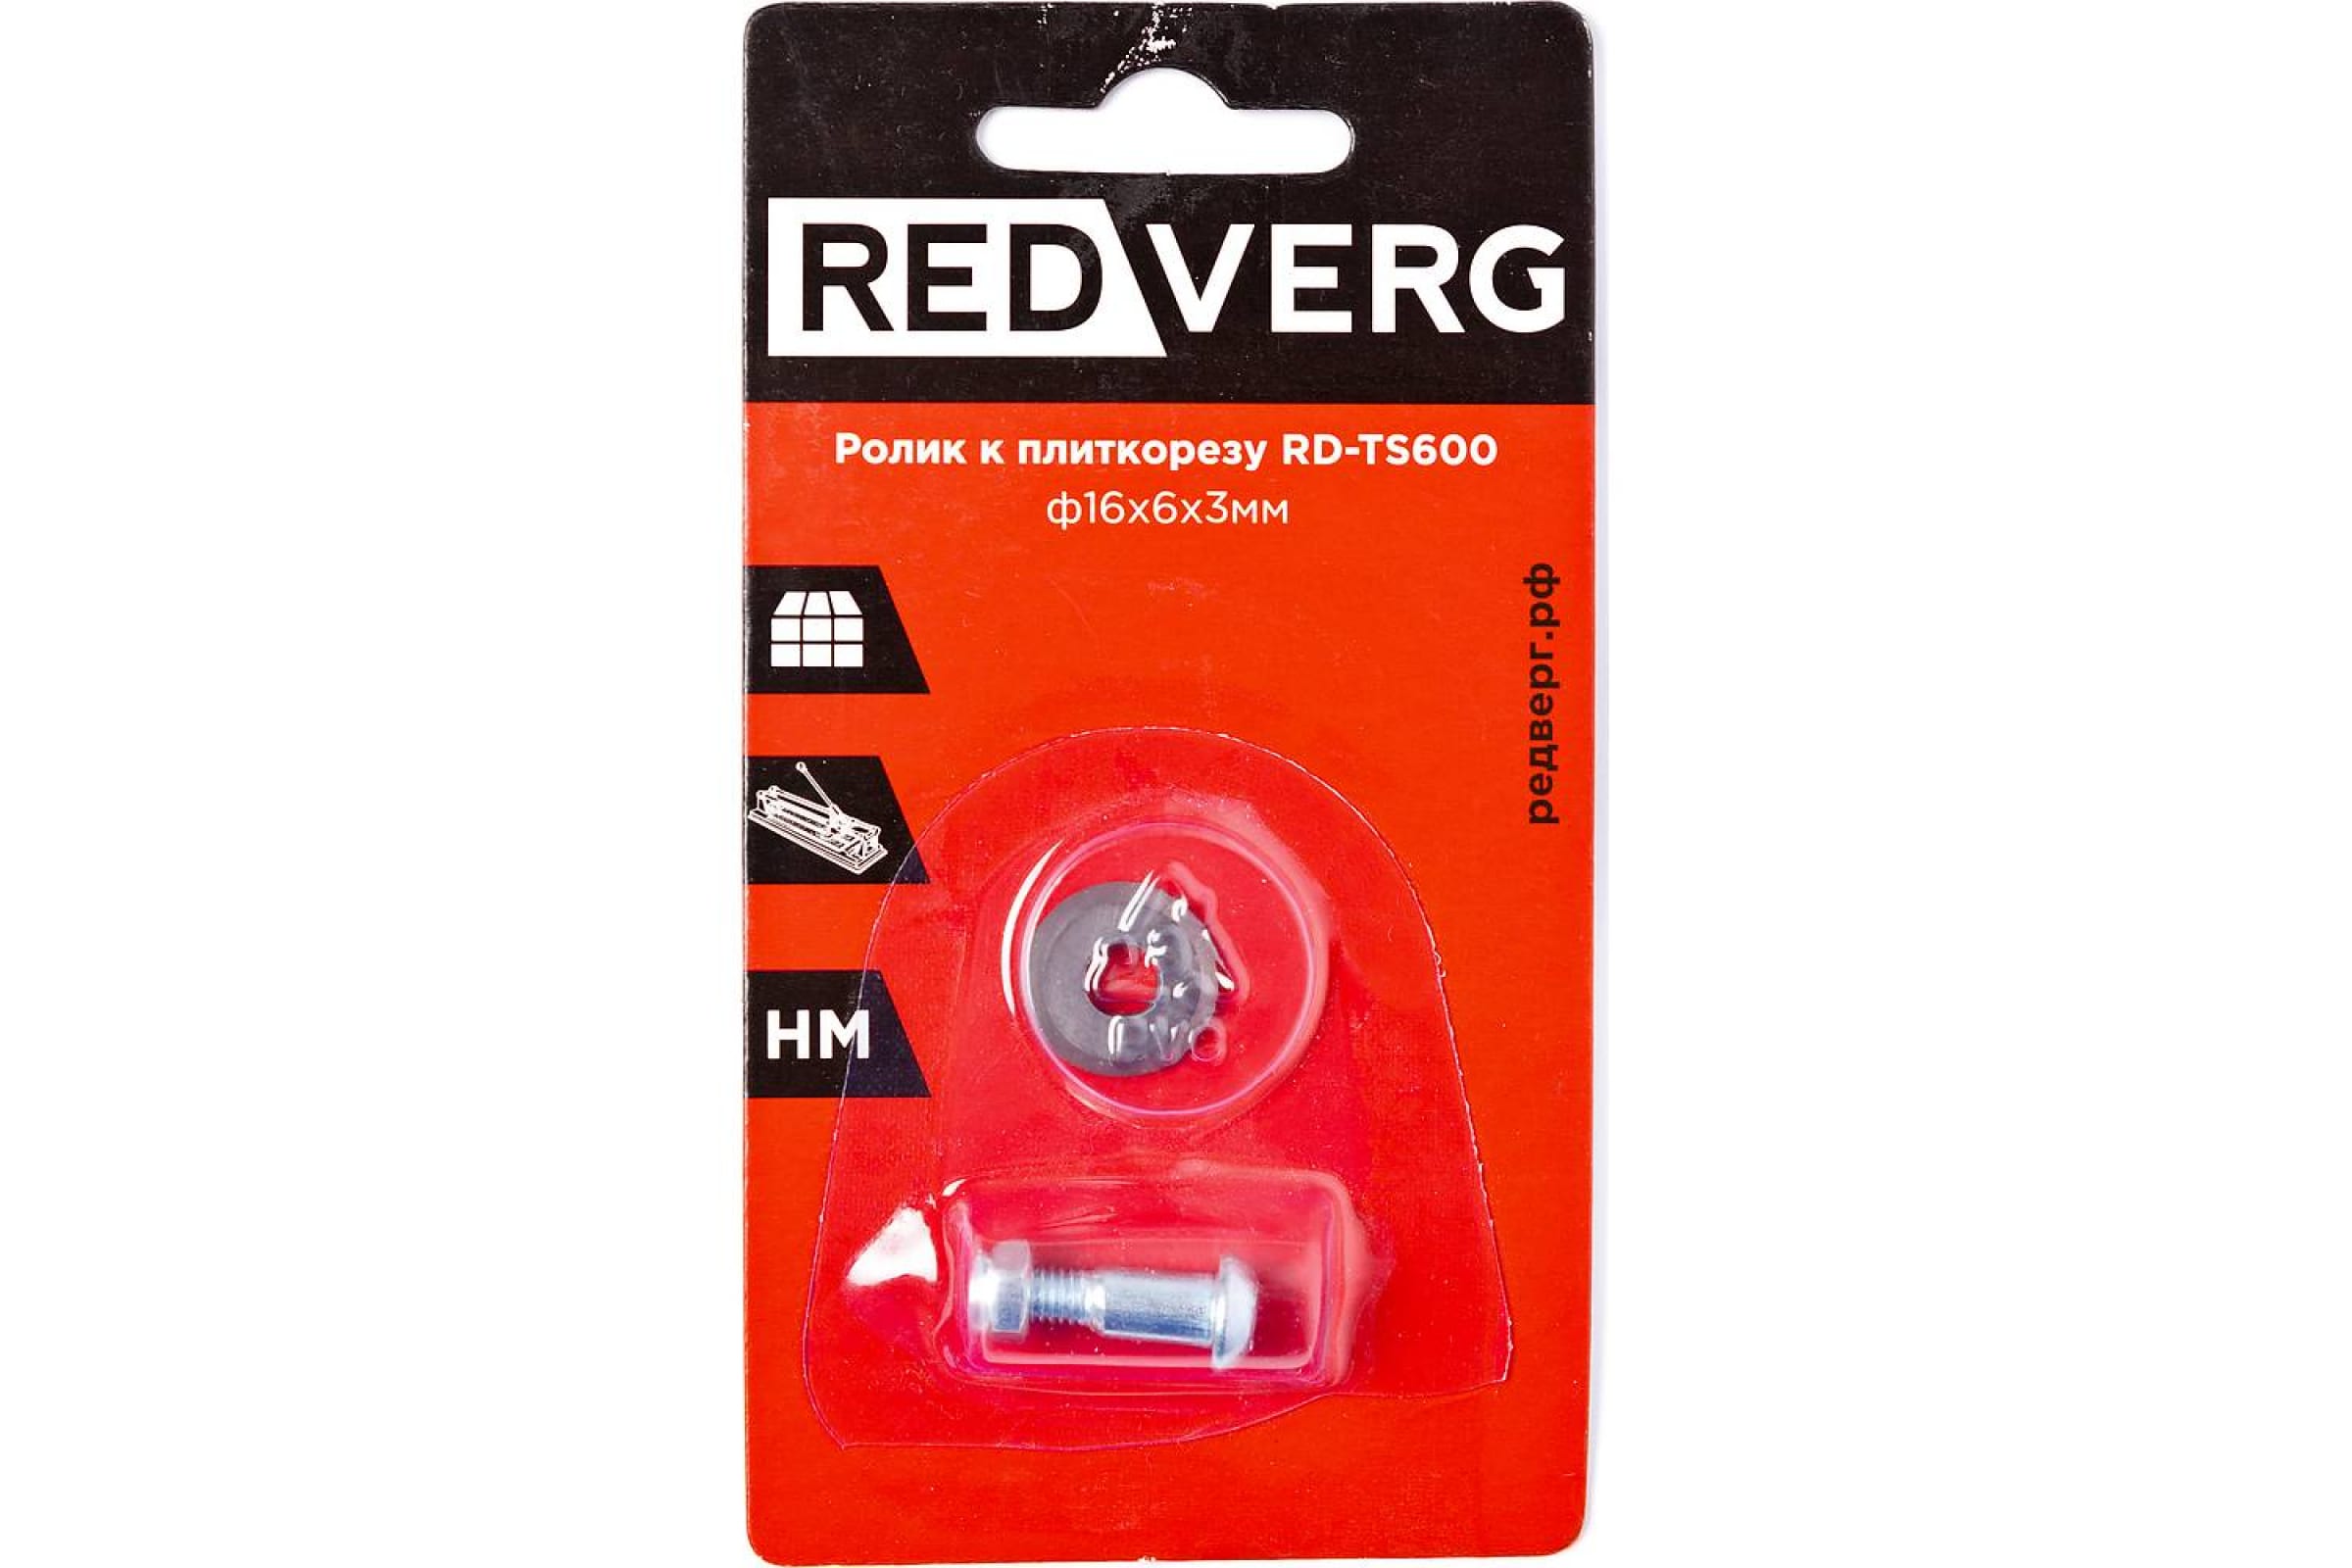 Ролик к плиткорезу RedVerg RD-TS600 ролик к плиткорезу dexter 8117 22tb 22x6x6 мм